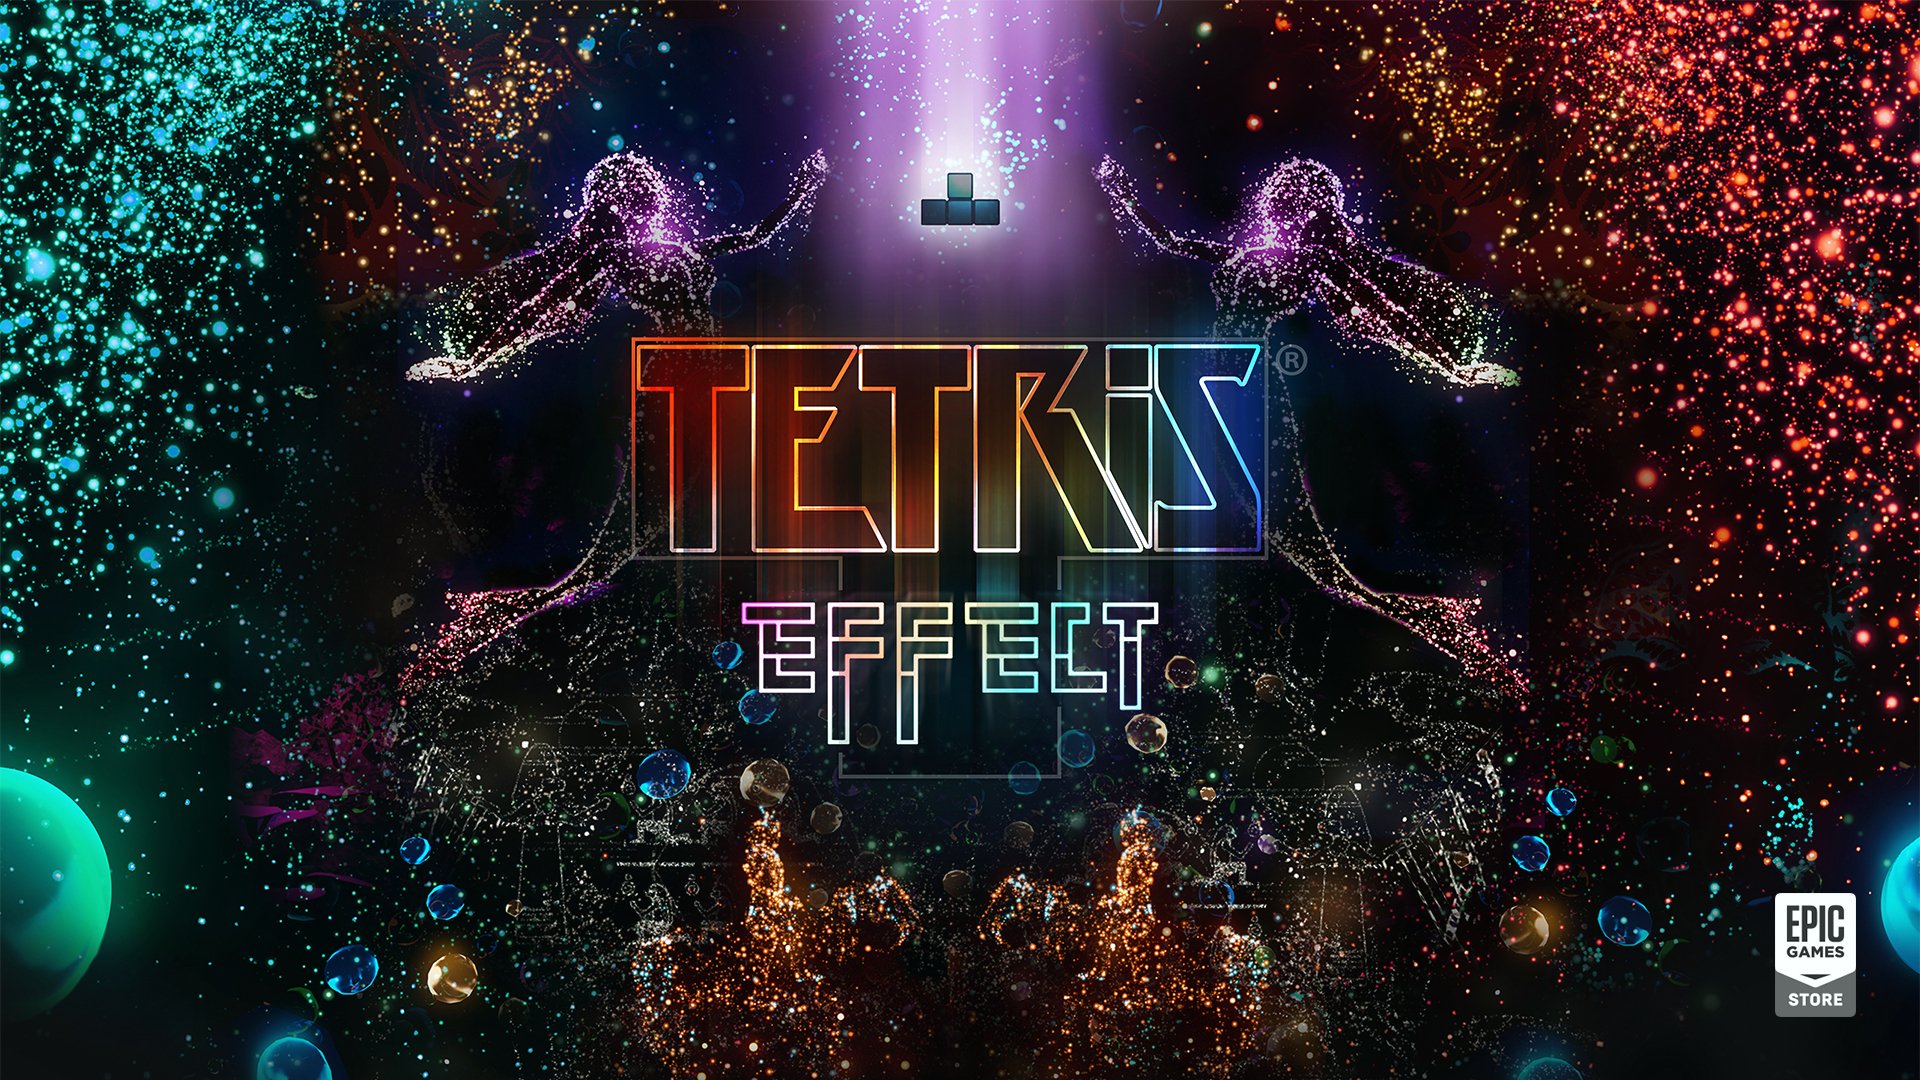 Tetris Effect เตรียมลง PC 23 ก.ค. นี้